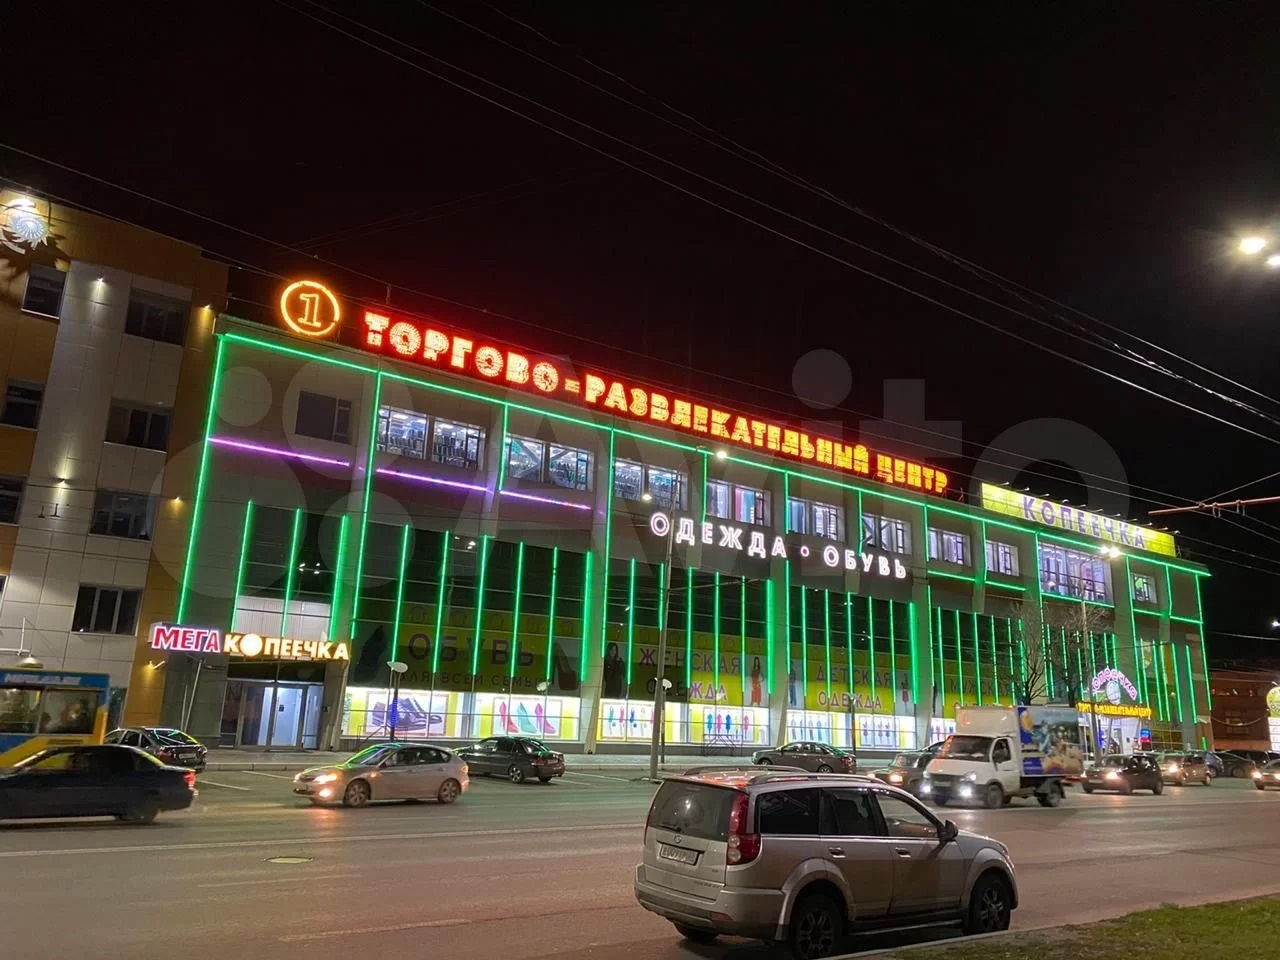 Во Владимире выставили на продажу здание ТЦ "Копеечка" на Большой Нижегородской